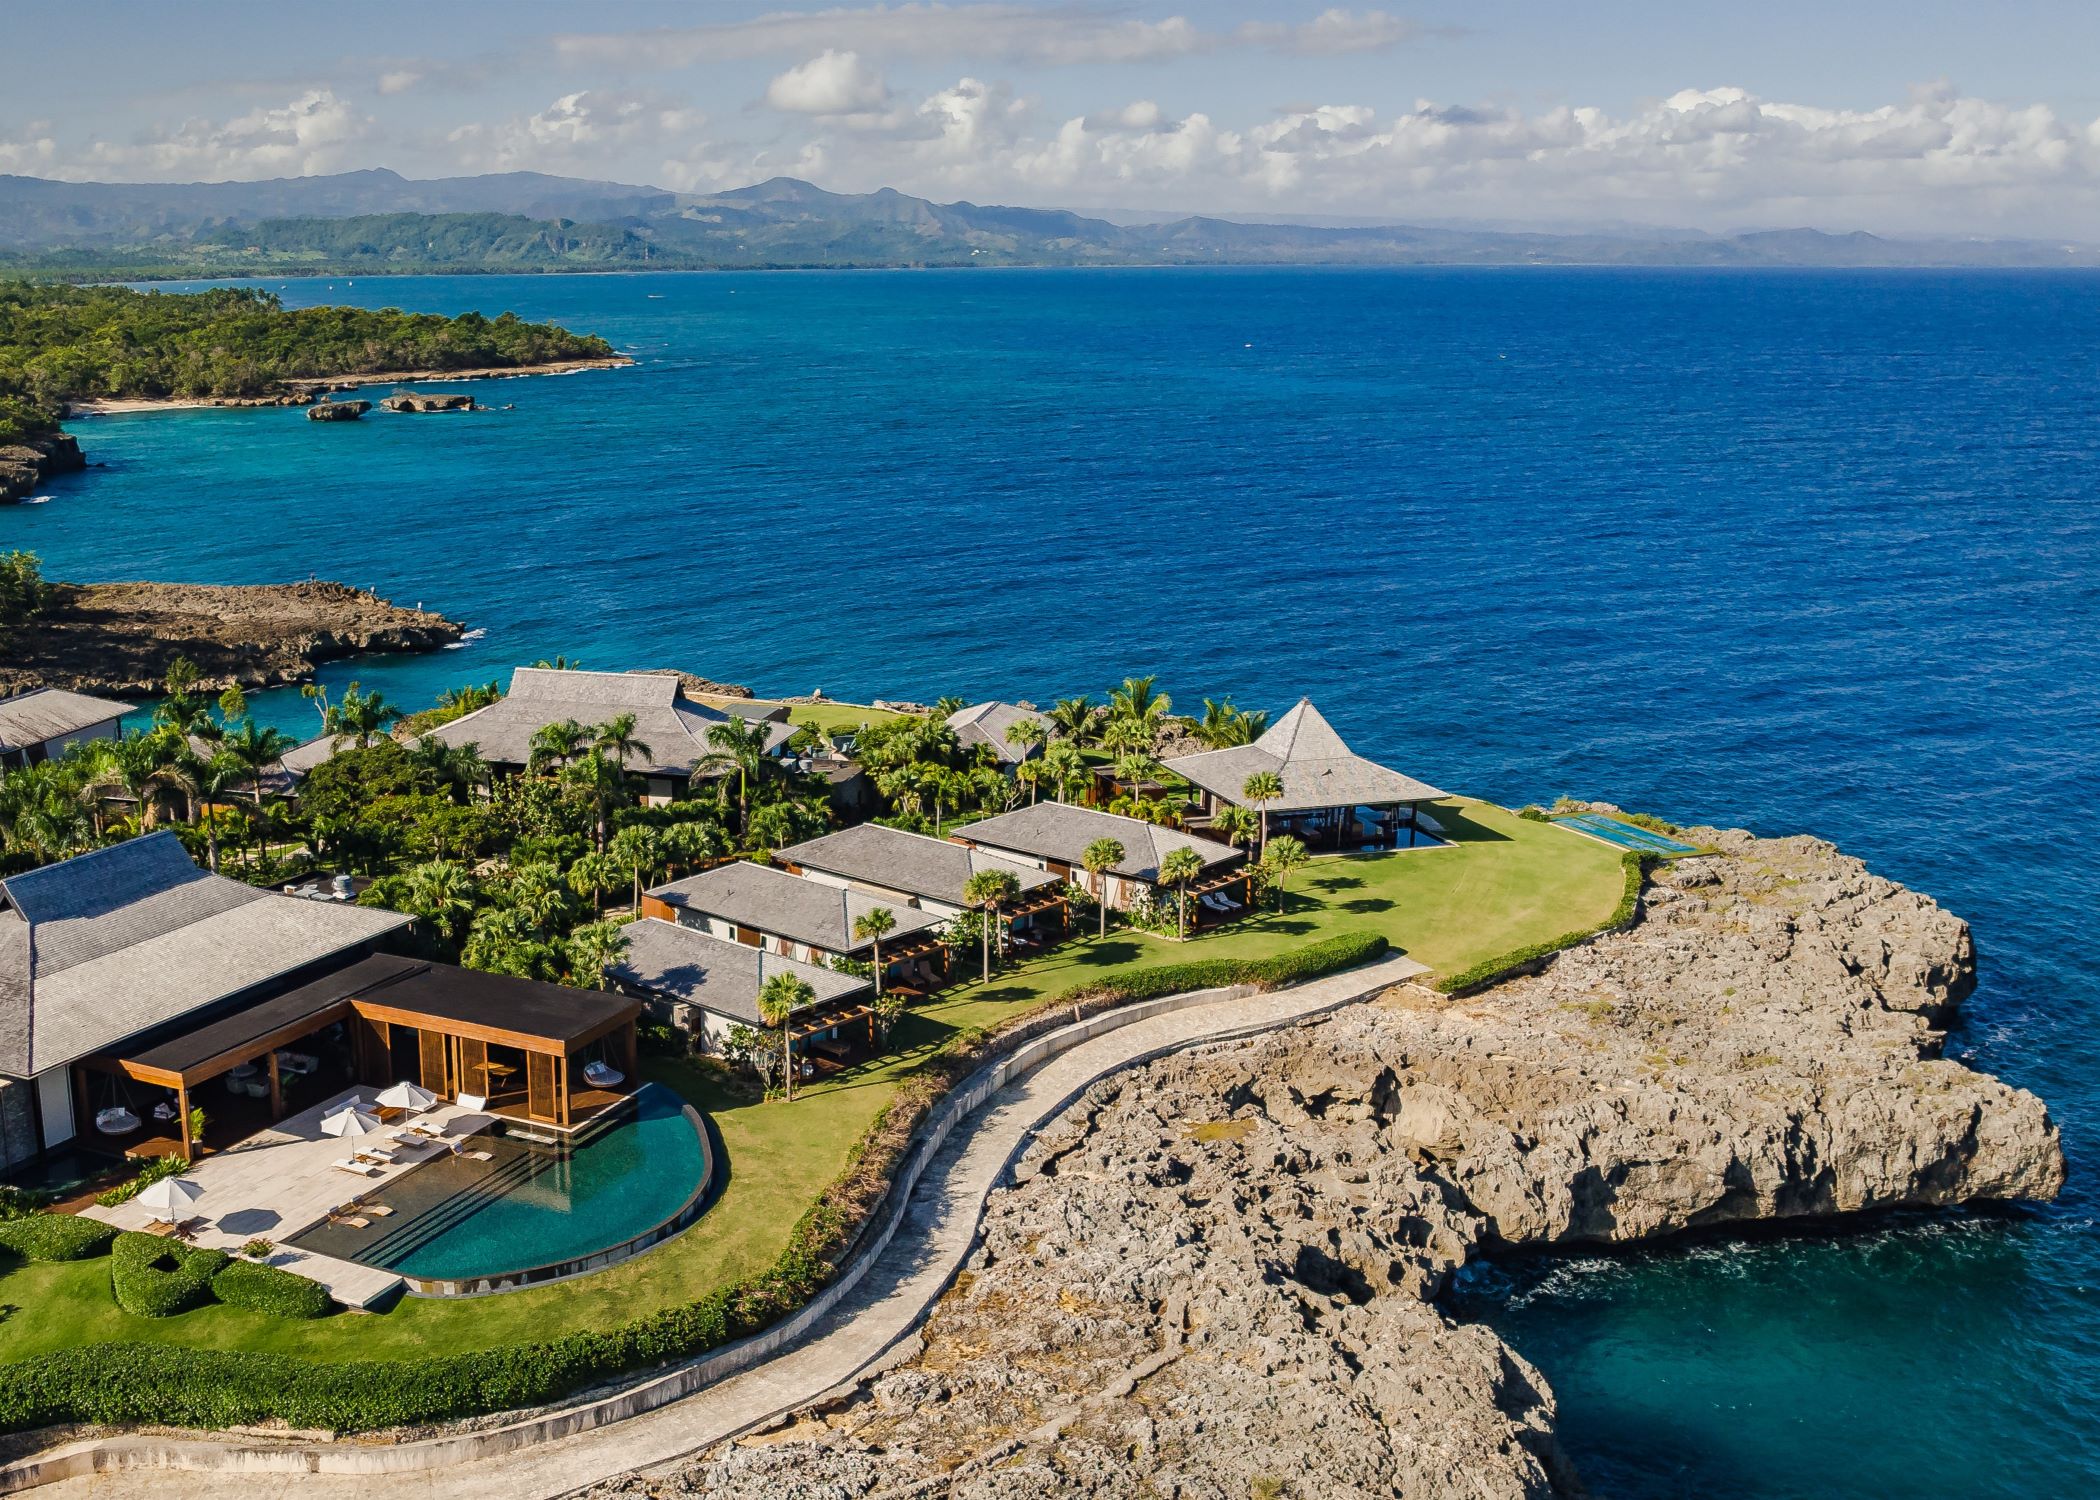 ANI Dominican Republic - Private Villa Resort with Ocean View - Drone 6 - 7-5